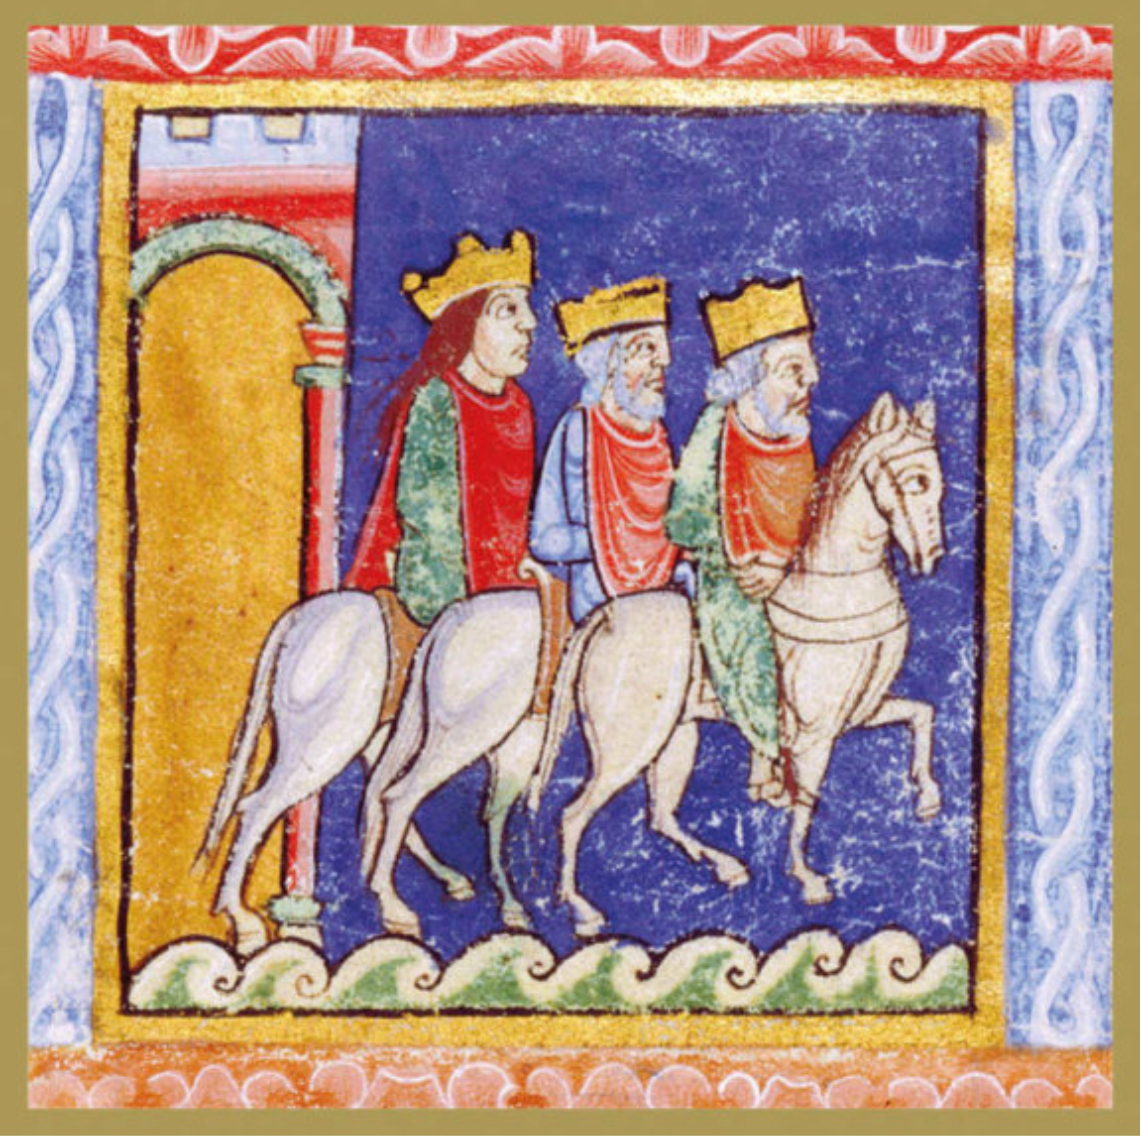 The Three Kings on Horseback